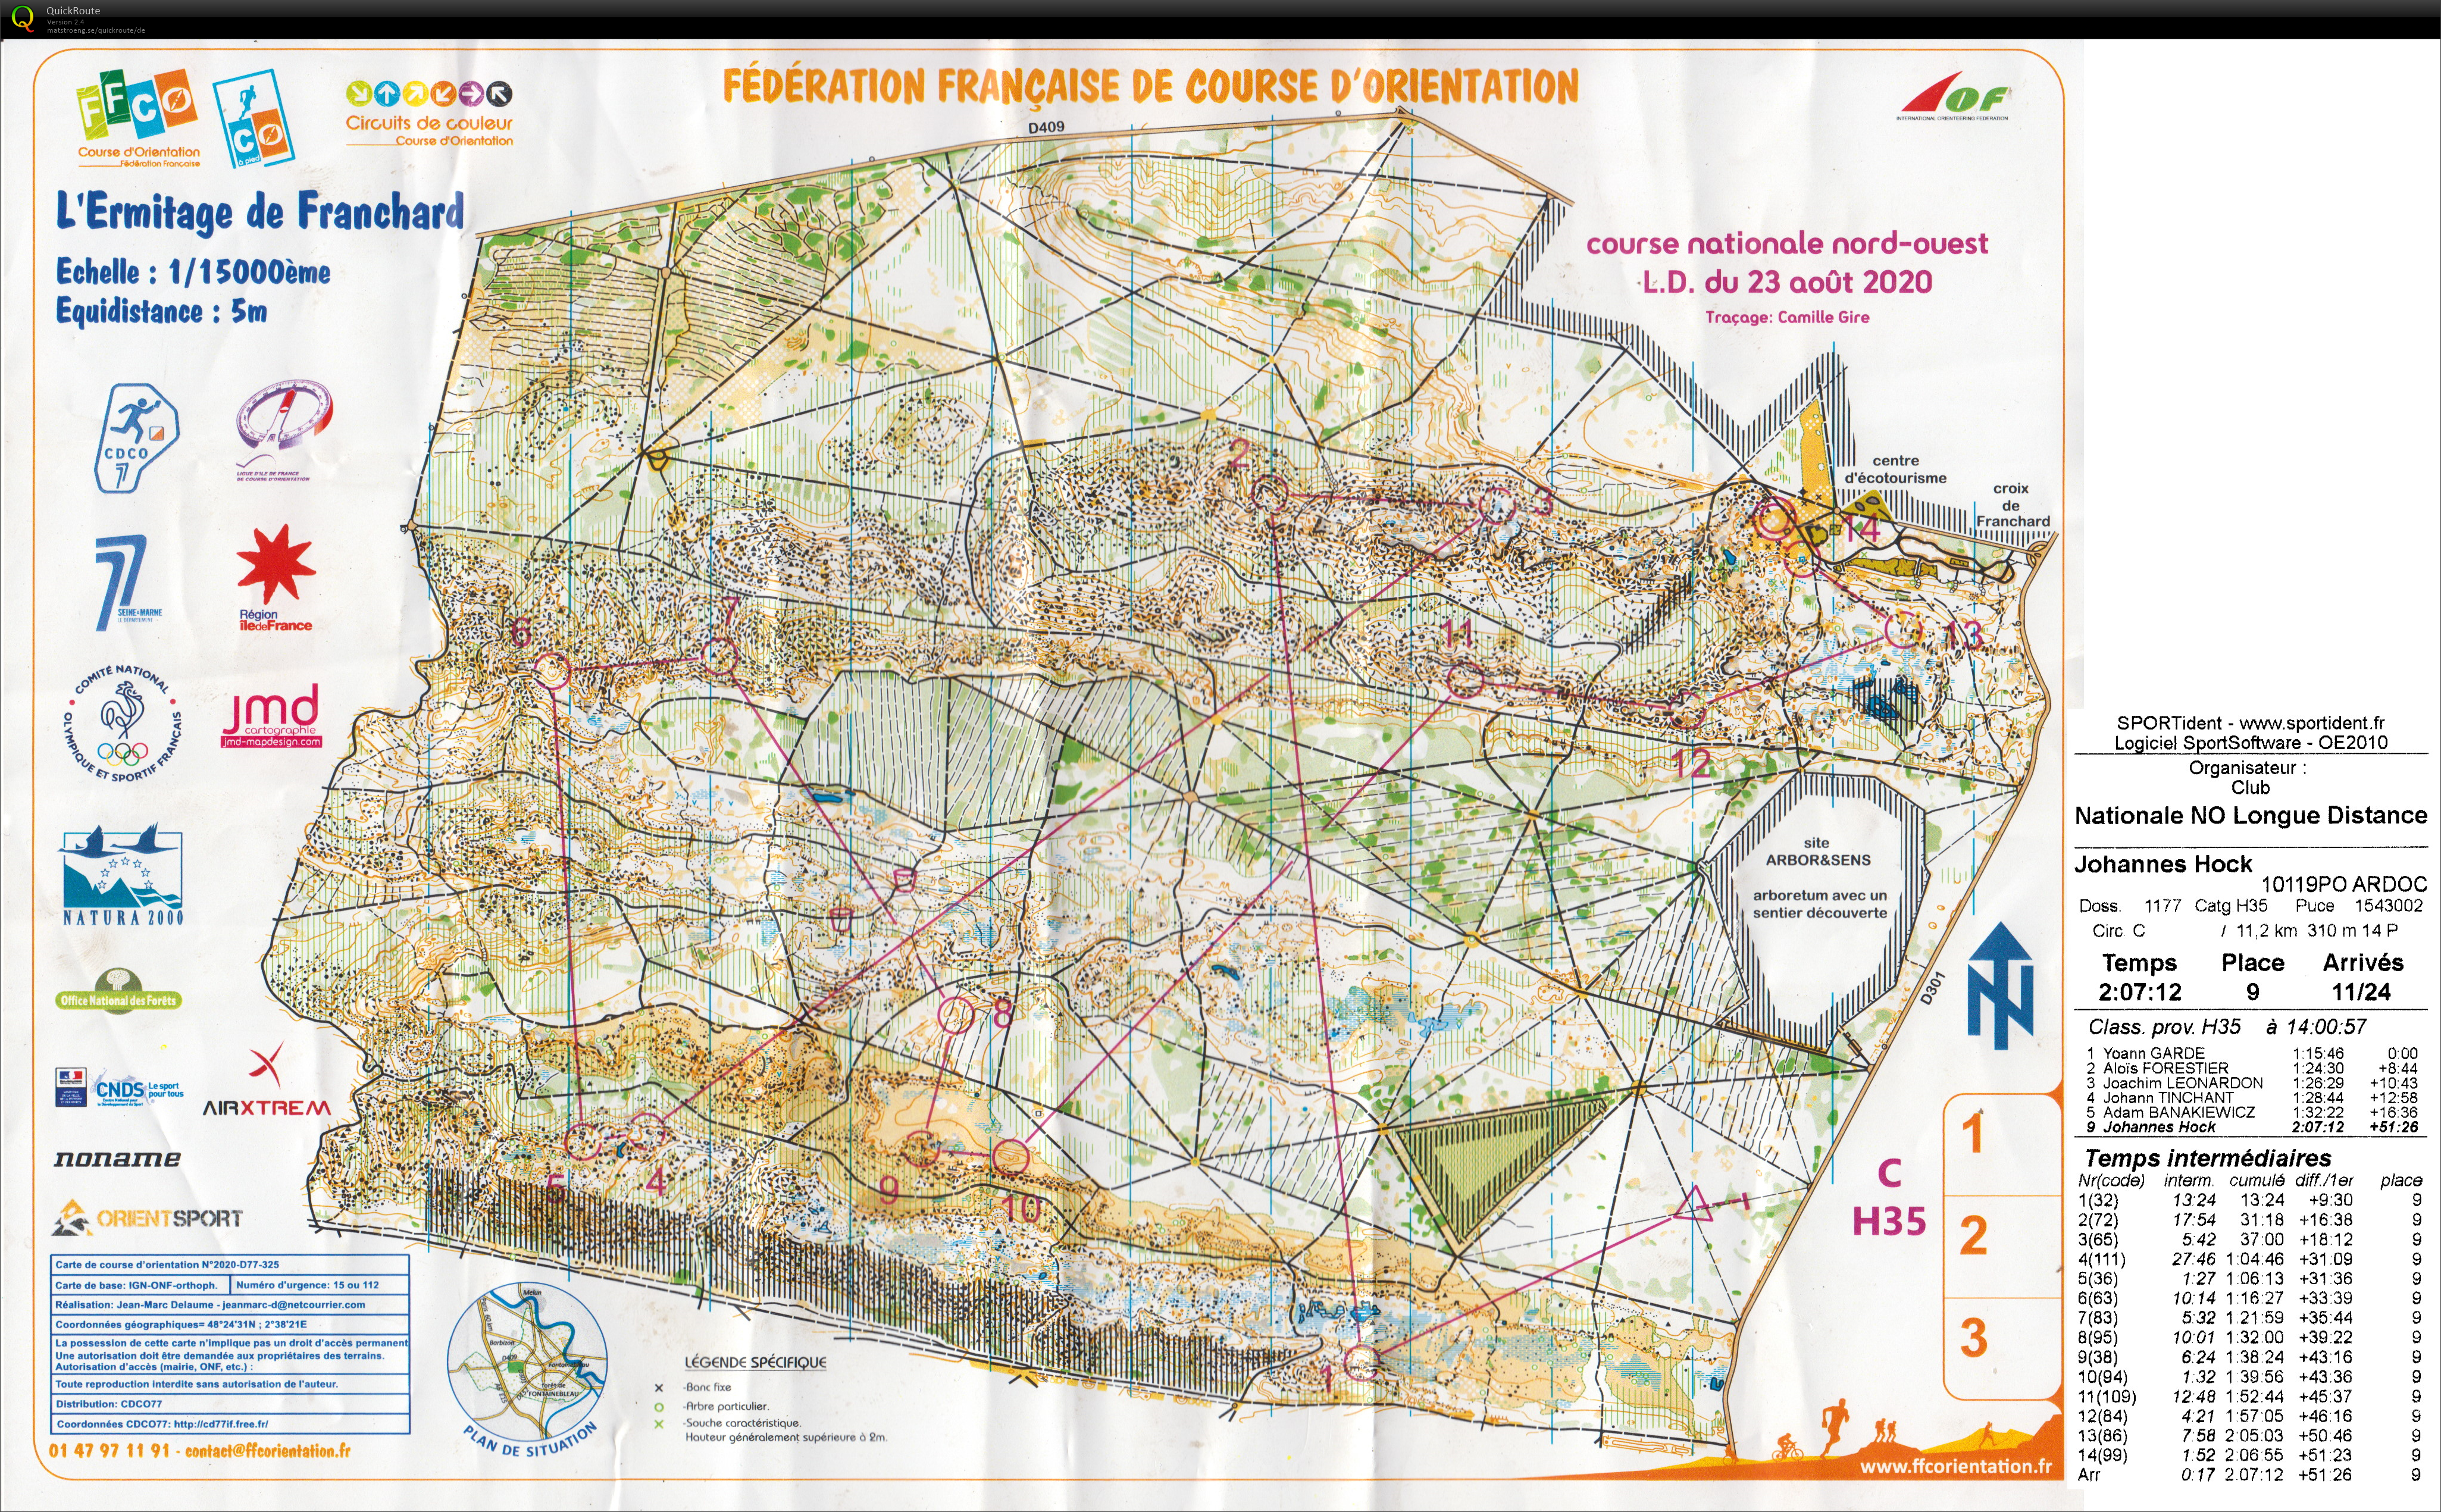 Course nationale L.D. Fontainebleau (2020-08-23)